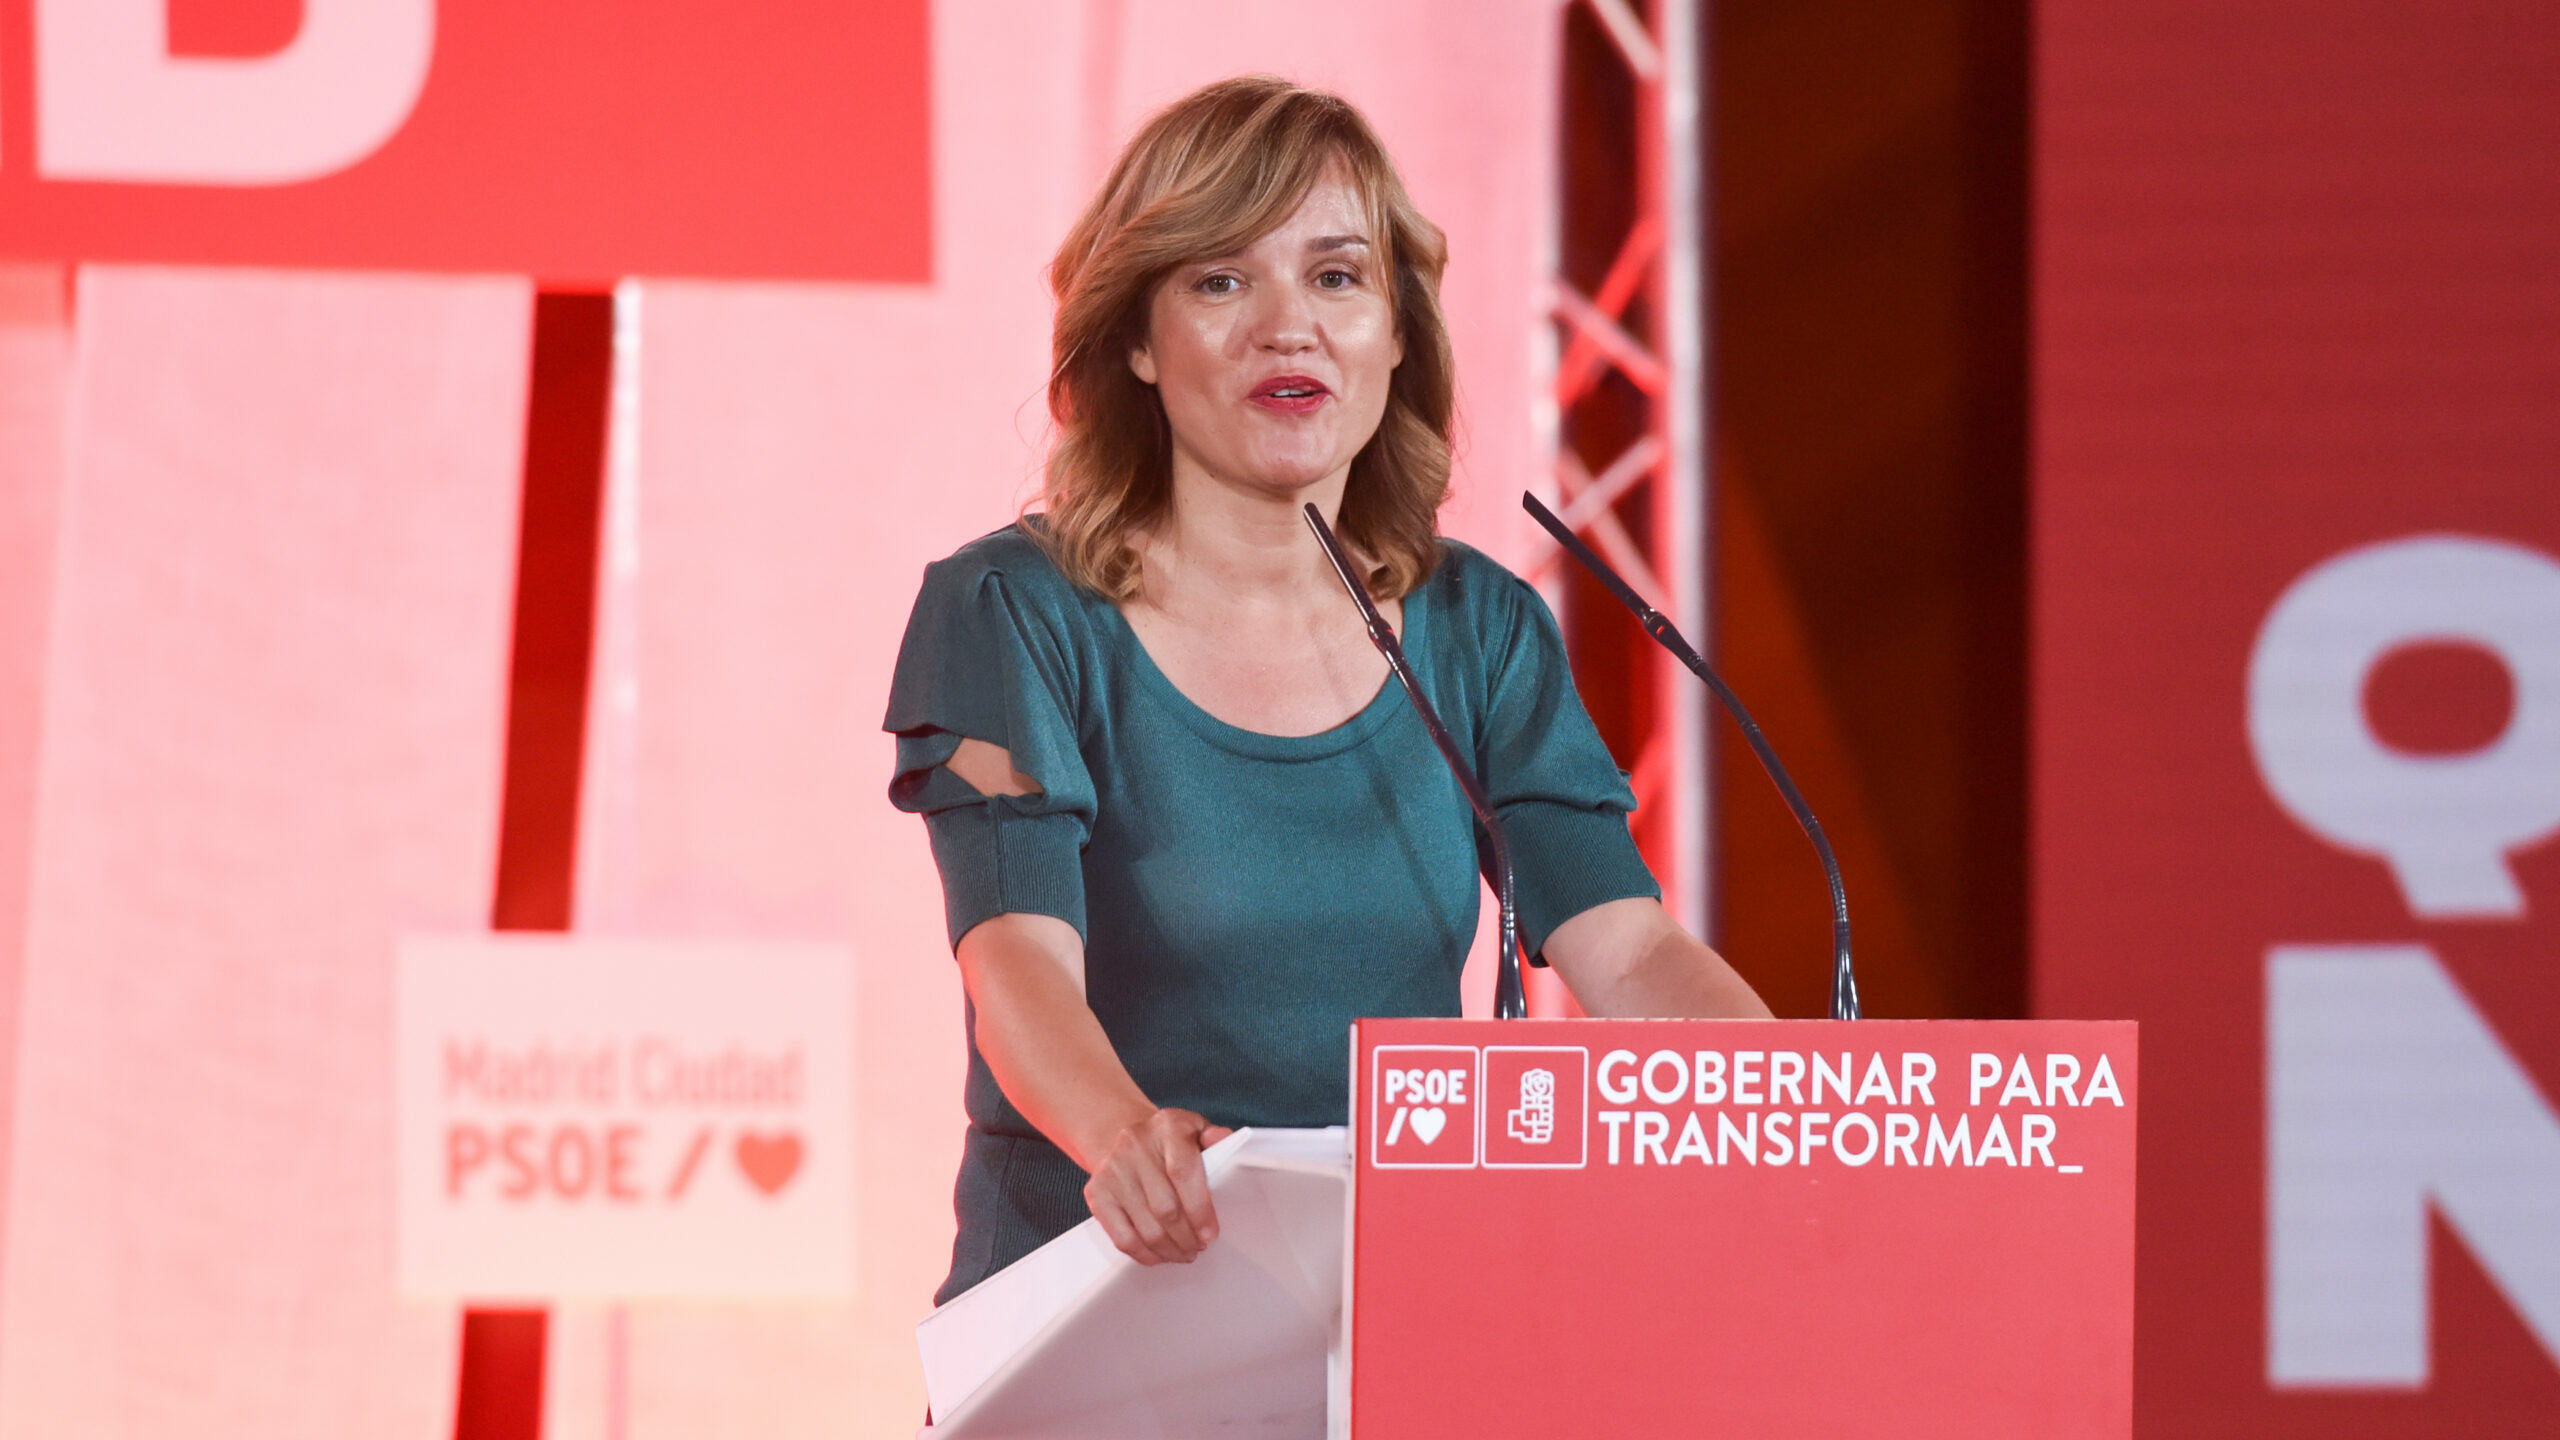 De segundo plano a azote de Núñez Feijóo: la 'lastrificación' de la ministra Pilar Alegría